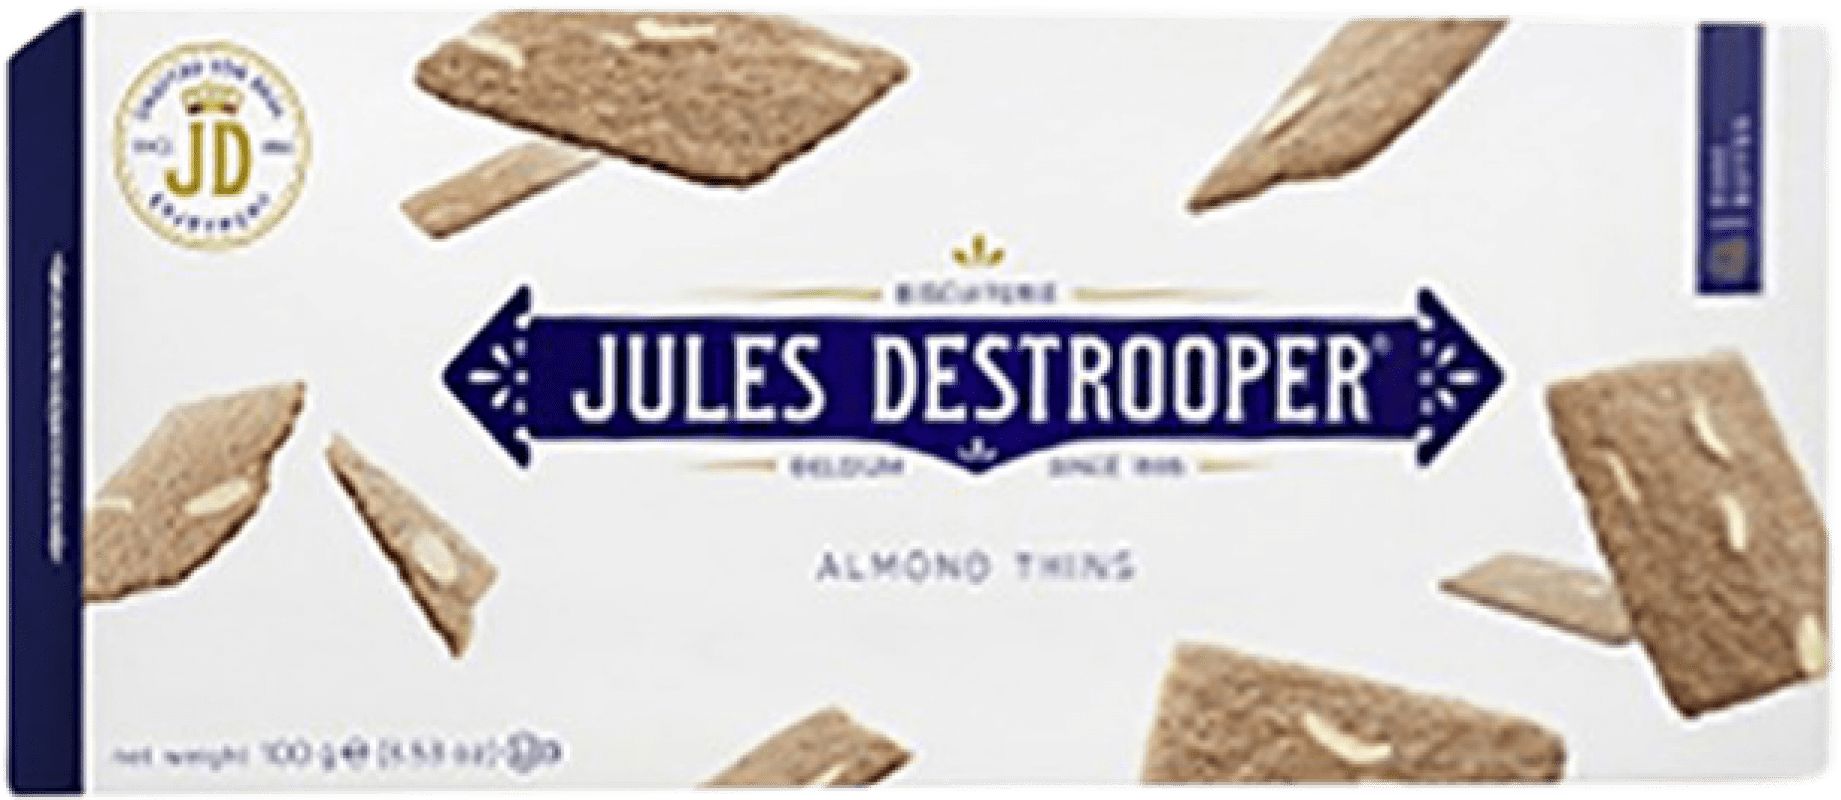 3,95 € Envío gratis | Aperitivos y Snacks Jules Destrooper Destrooper Bélgica